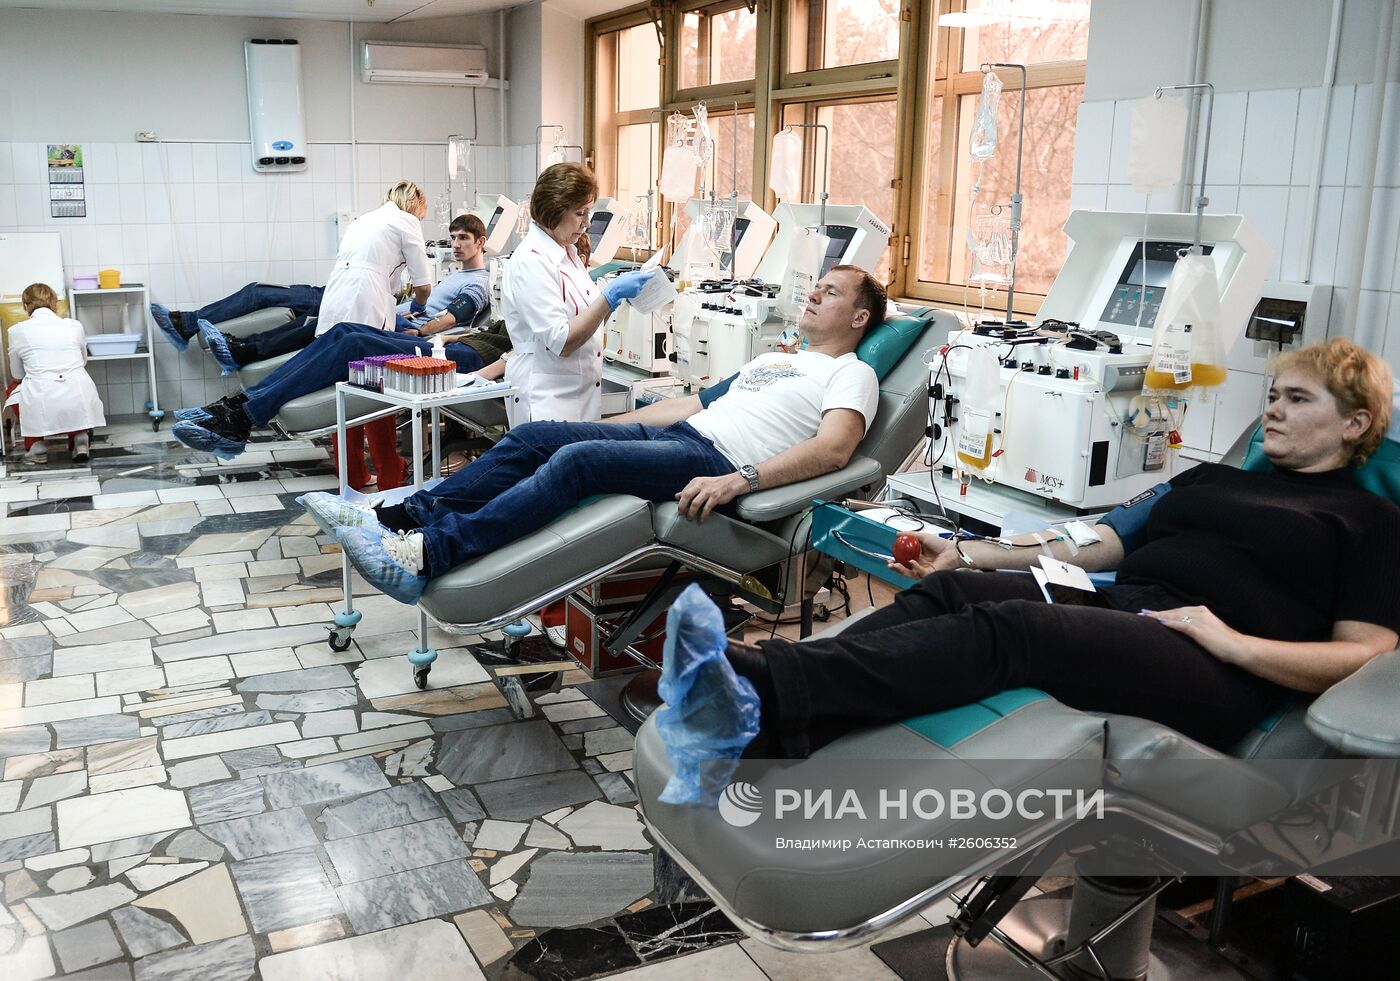 Центр крови ФМБА России